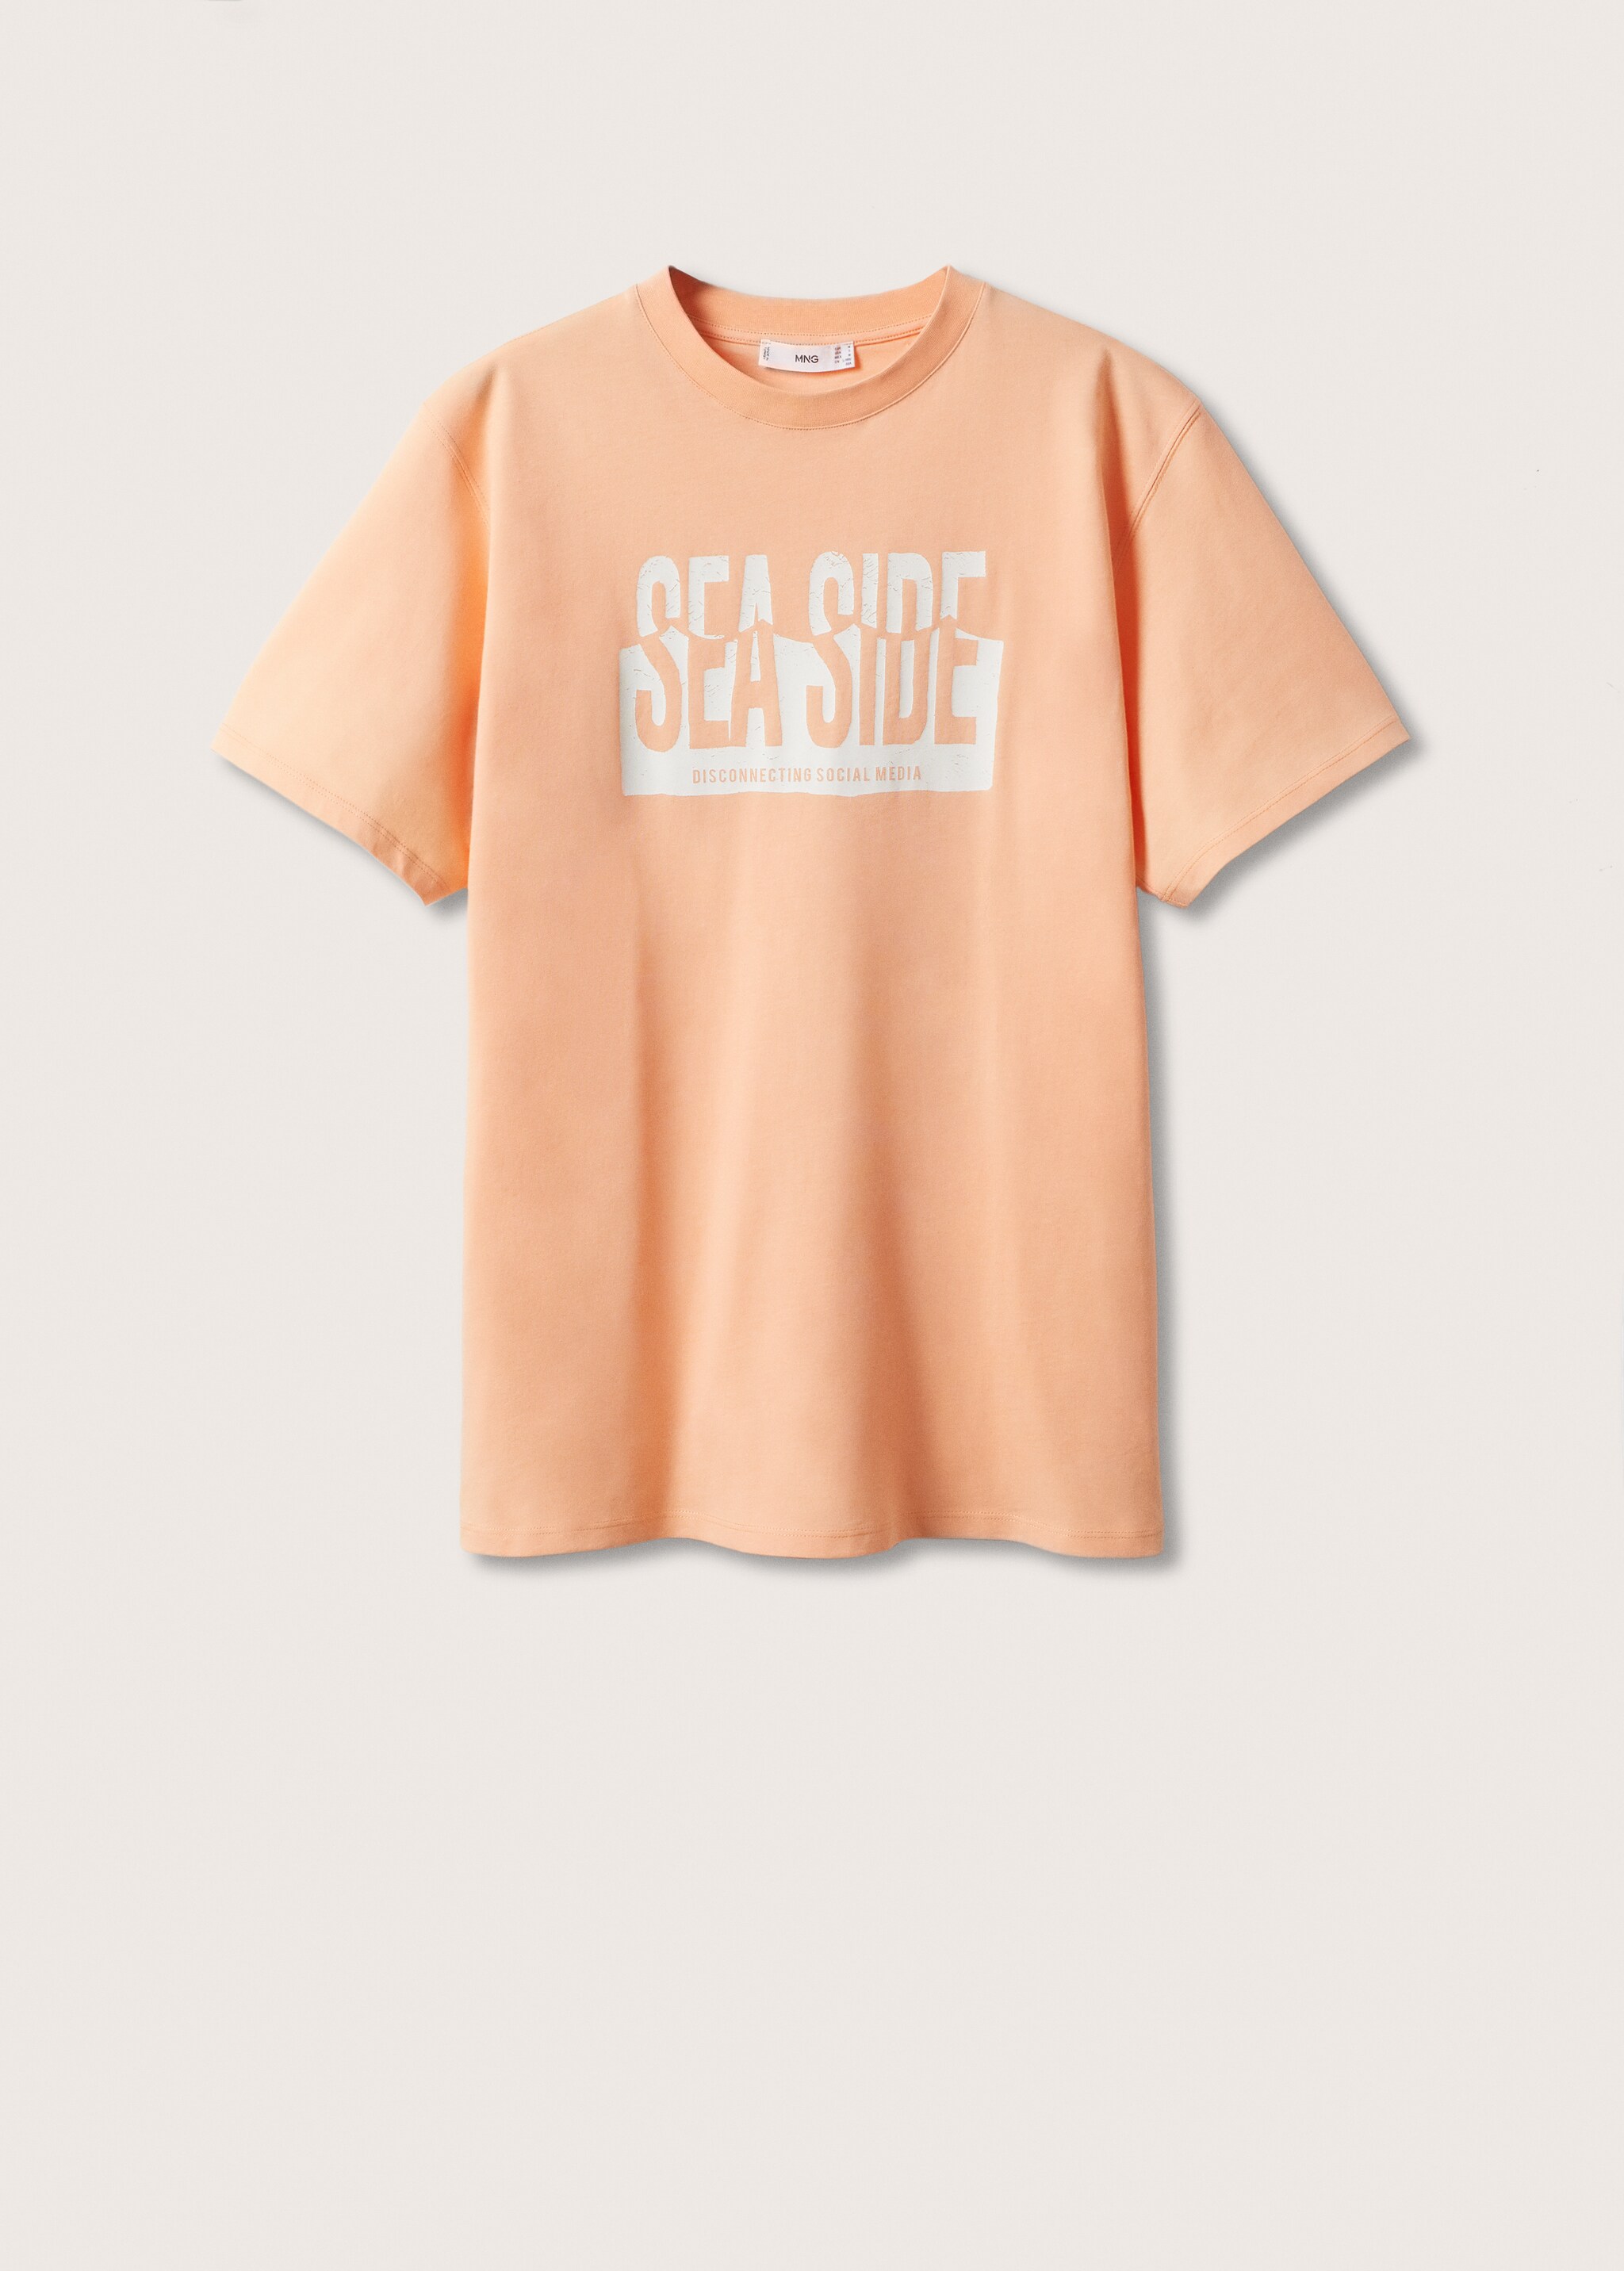 Camiseta algodón estampado - Artículo sin modelo